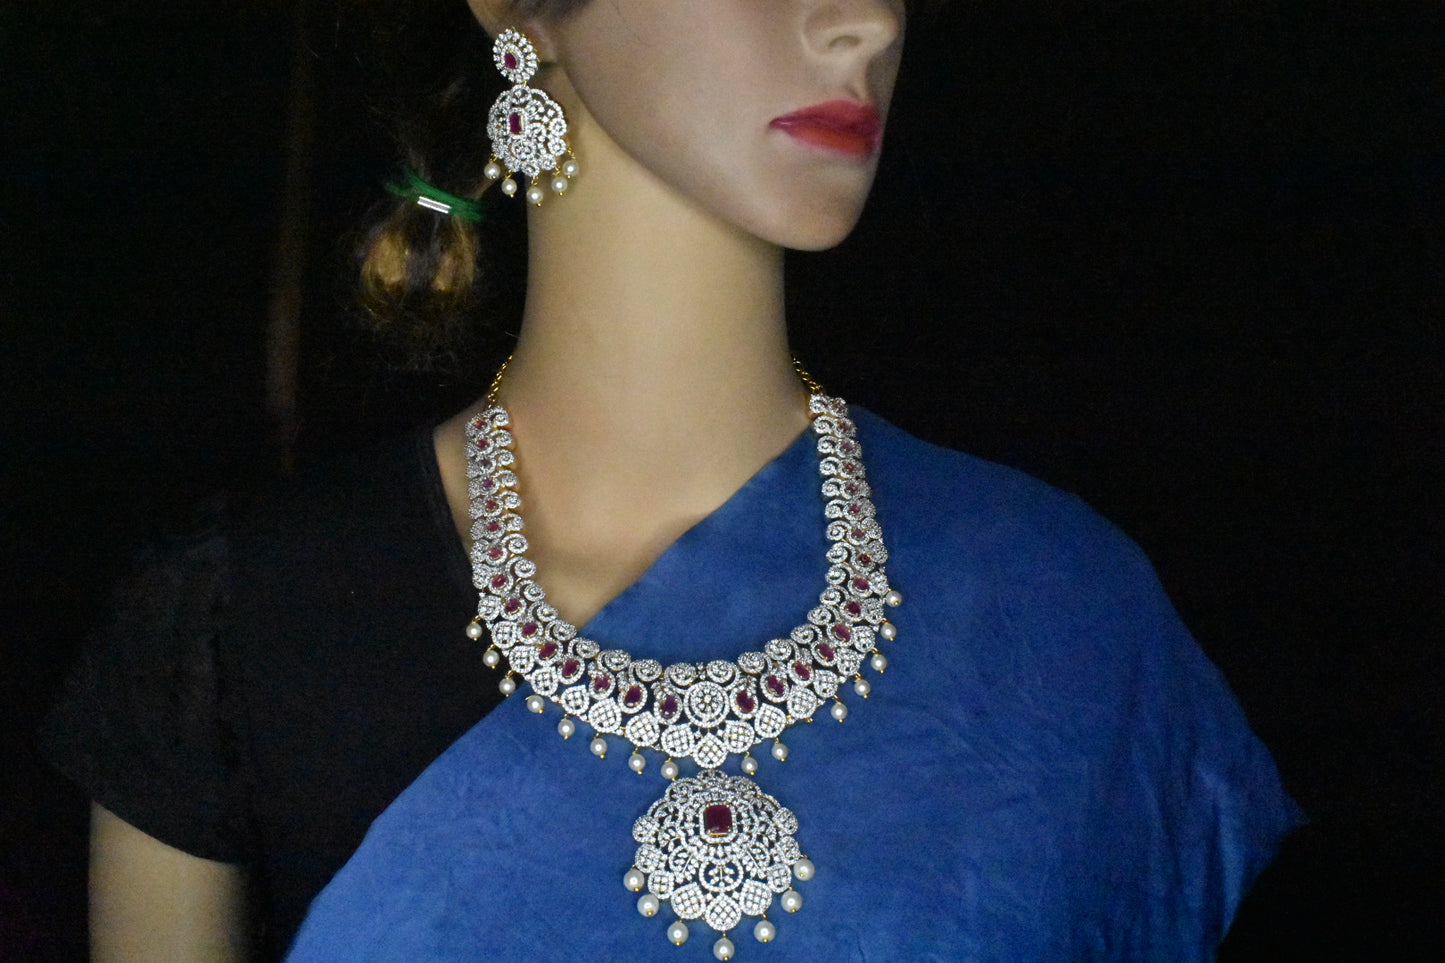 American Diamond Florar Necklace